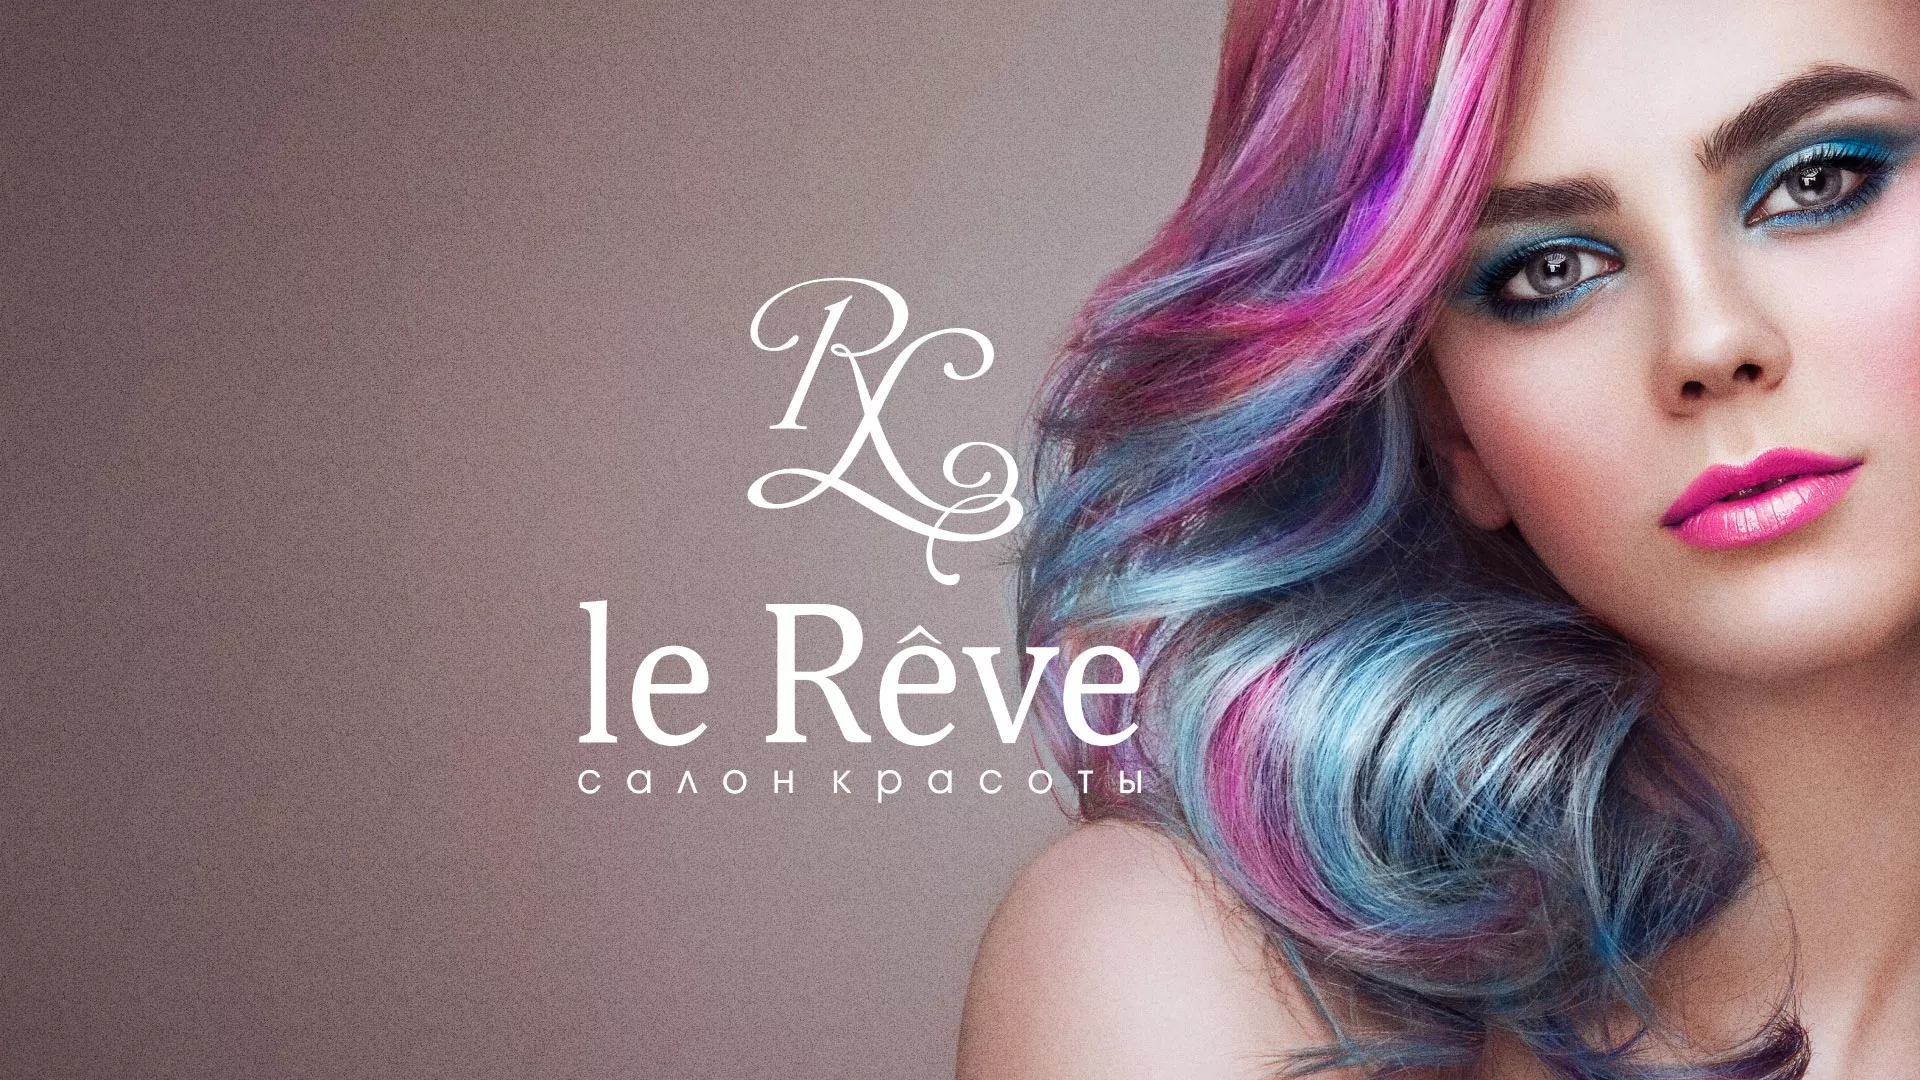 Создание сайта для салона красоты «Le Reve» в Тереке